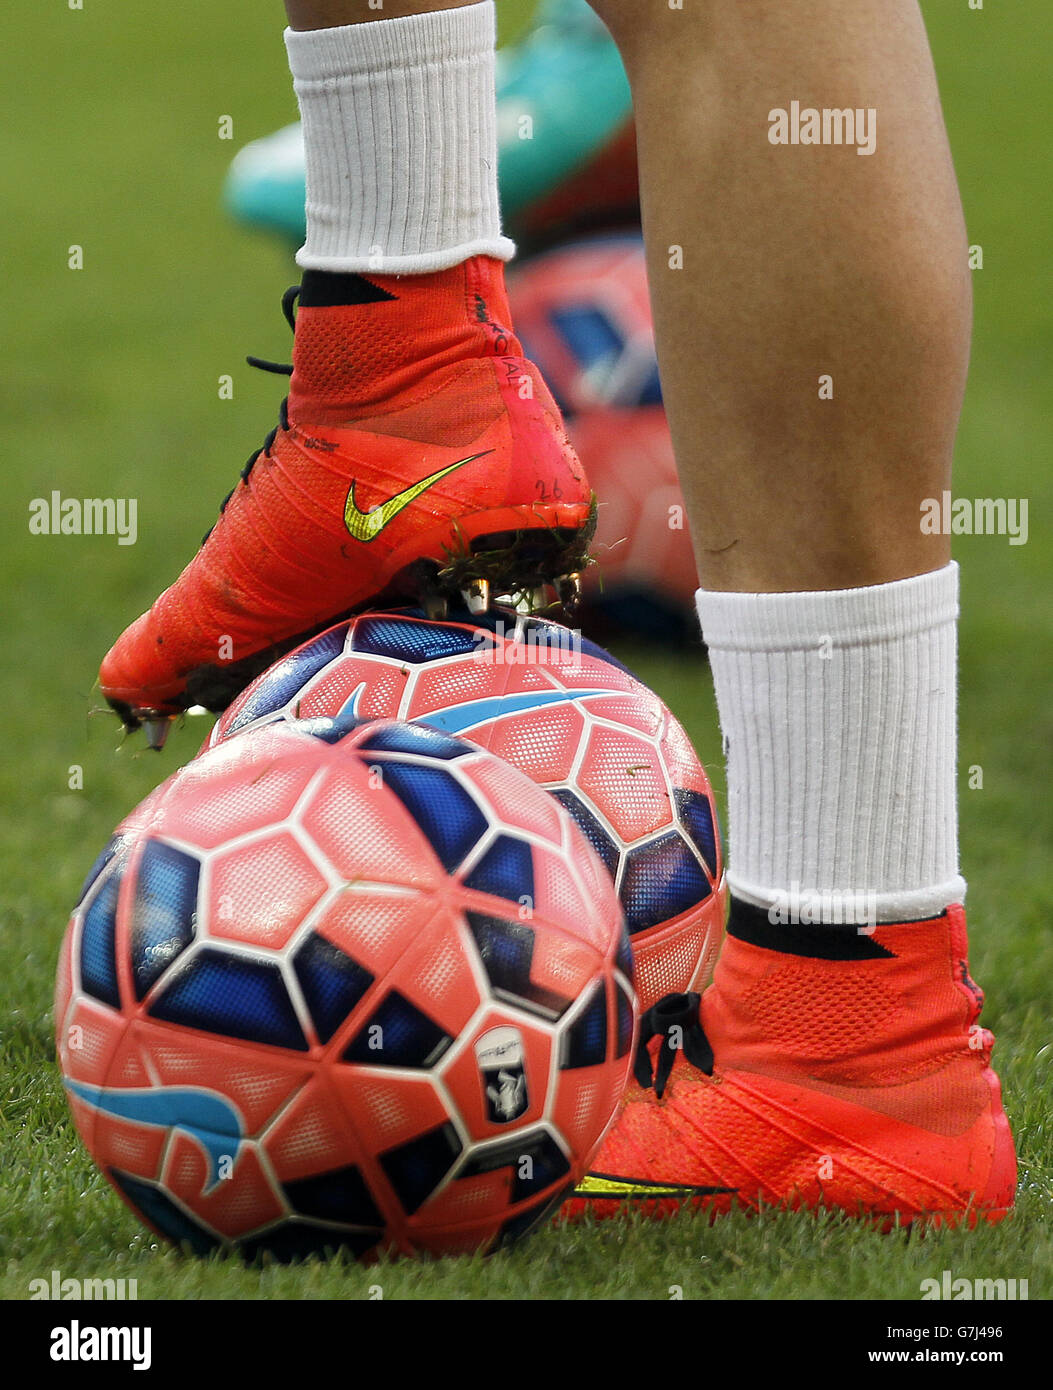 Scarpe da calcio nike immagini e fotografie stock ad alta risoluzione -  Alamy